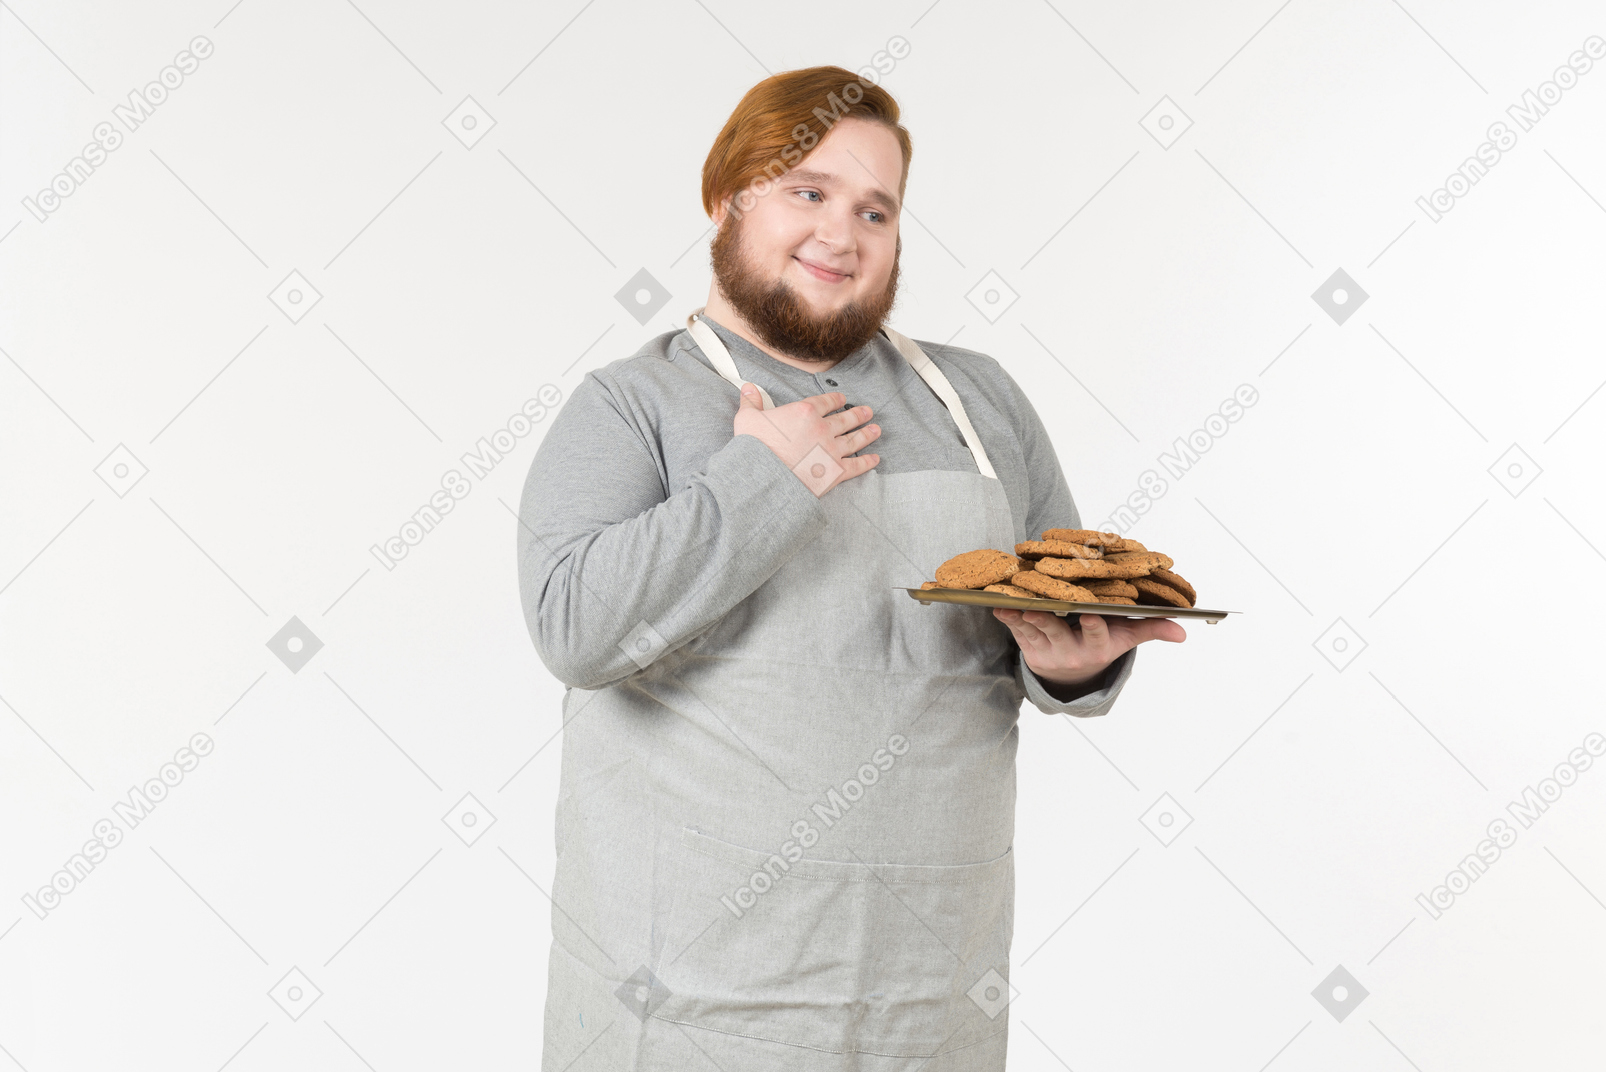 Un panettiere grasso con un piatto di biscotti che sembra soddisfatto